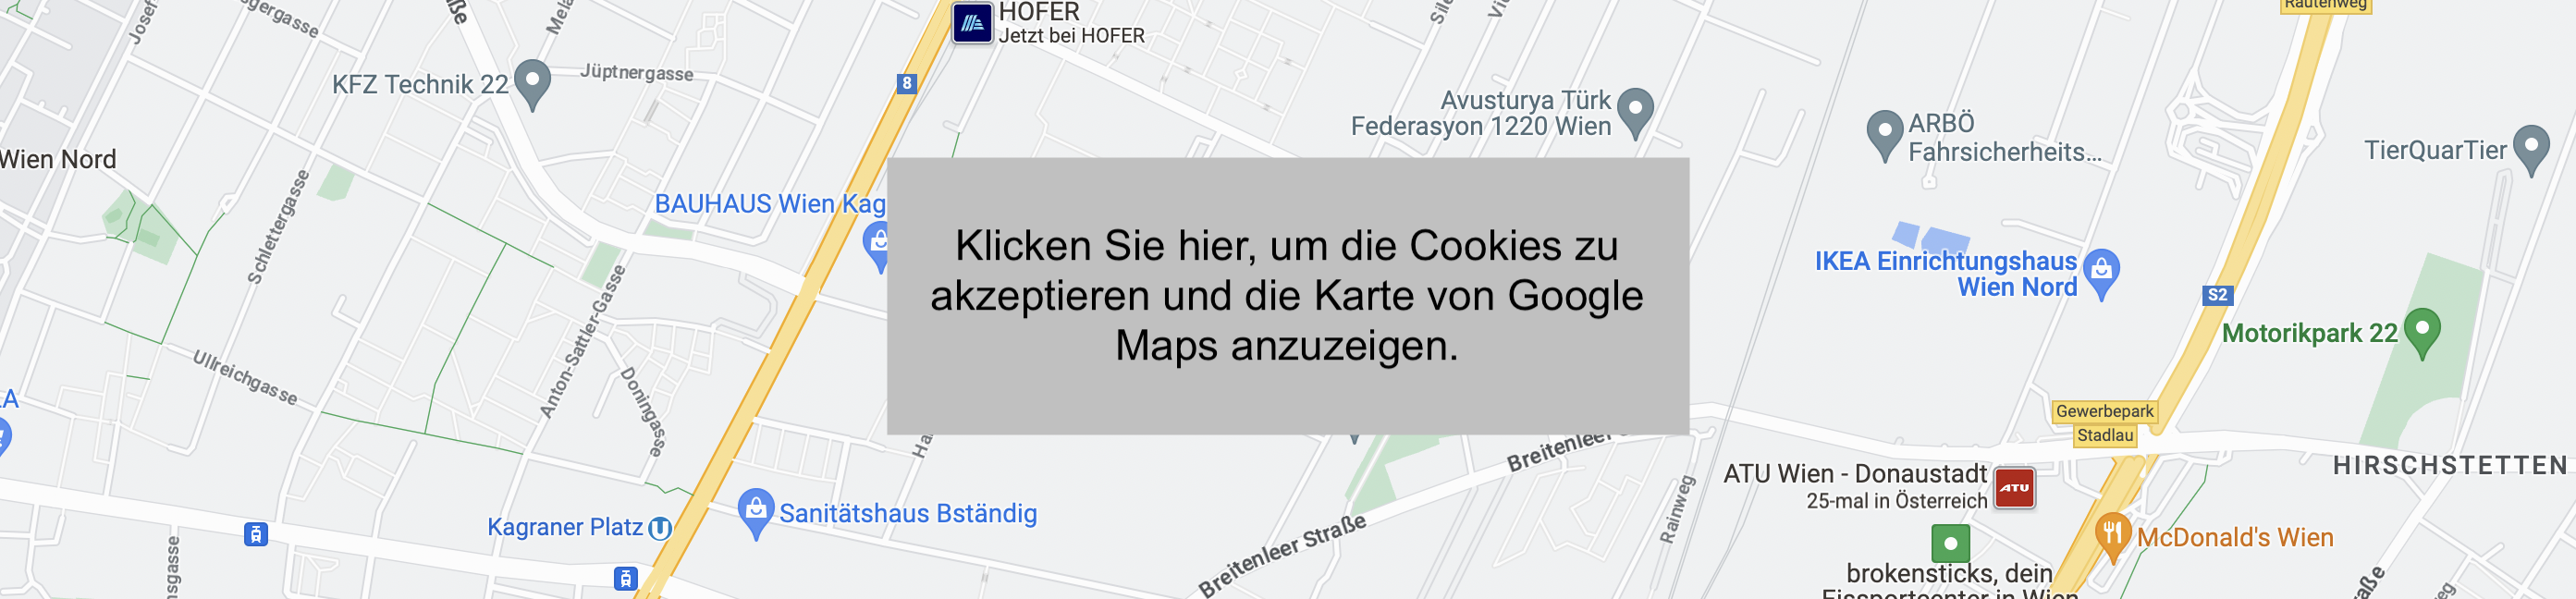 Ein Vorschau einer Karte, die auf dem Desktop angezeigt wird, wenn der Nutzer den Cookies nicht zustimmt. 